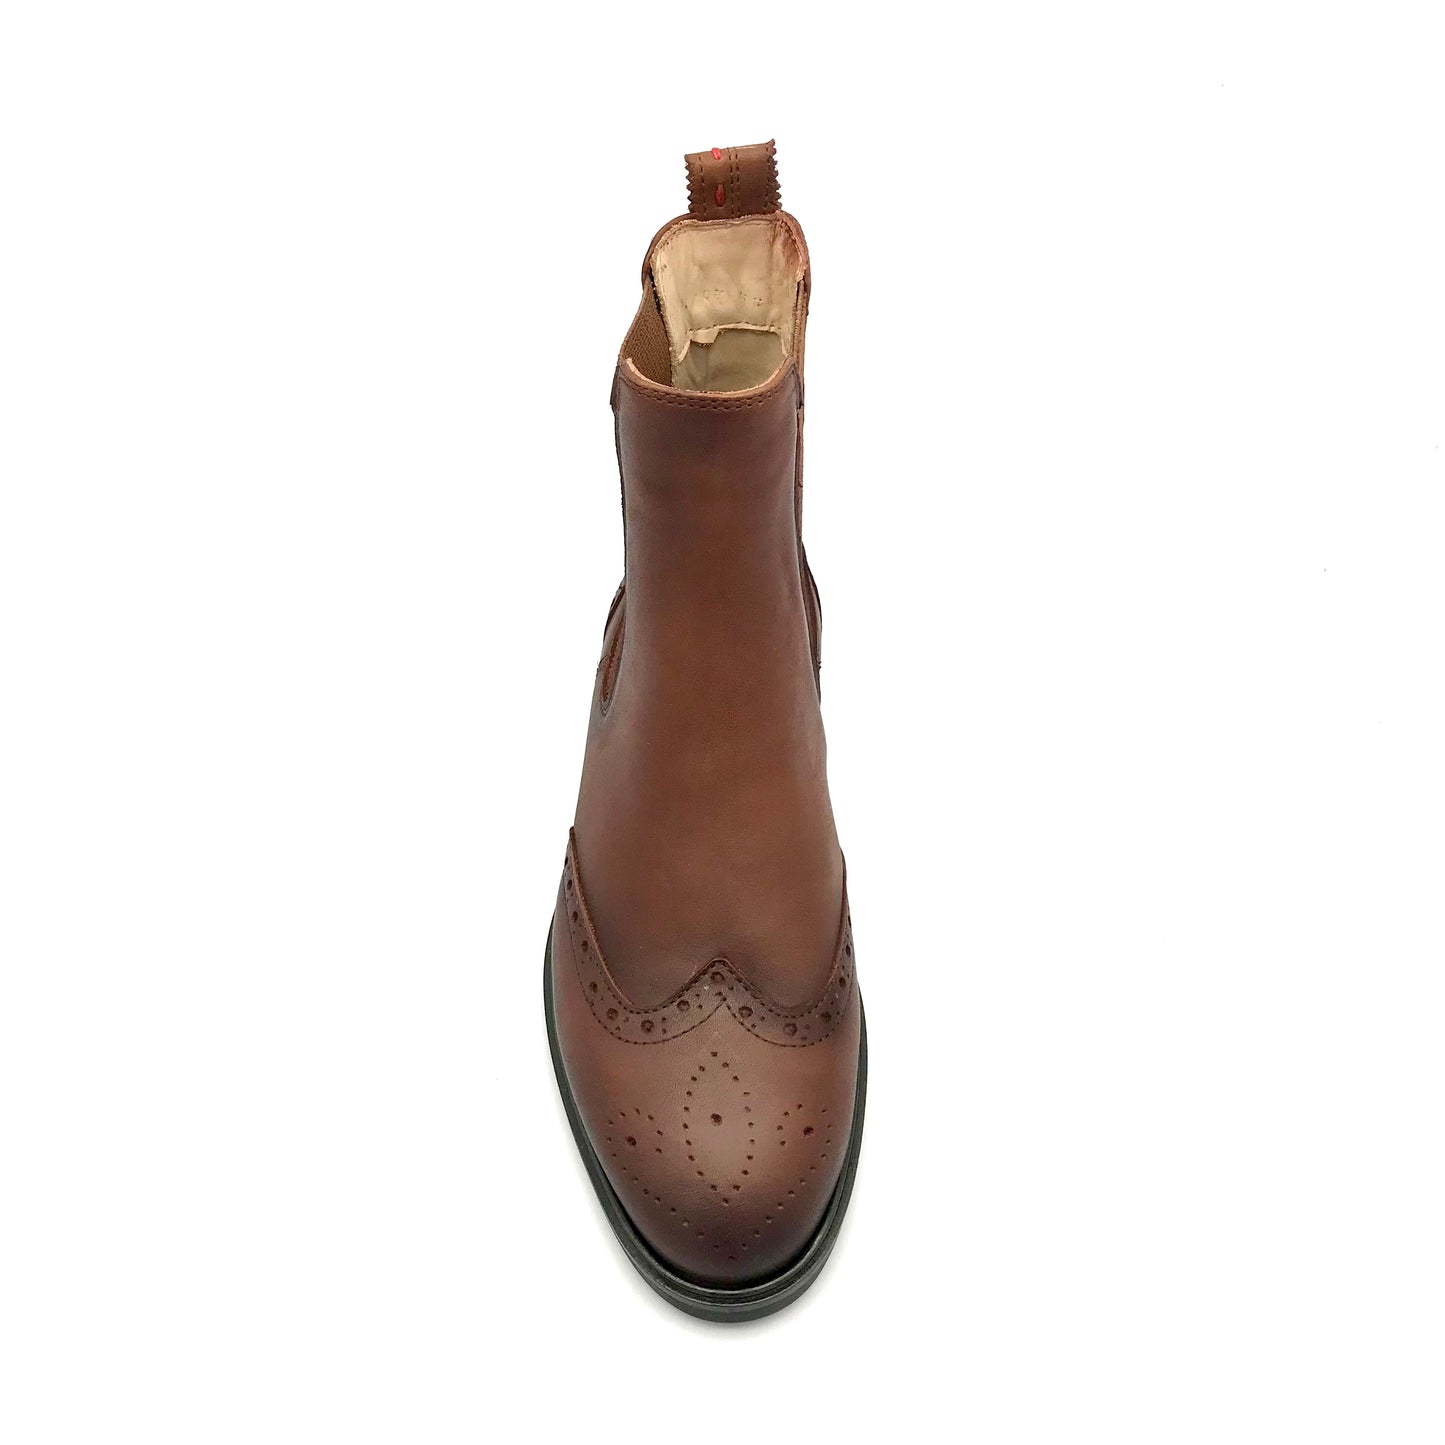 The Schuh Effekt Boots Stiefeletten Chealsea Cognac